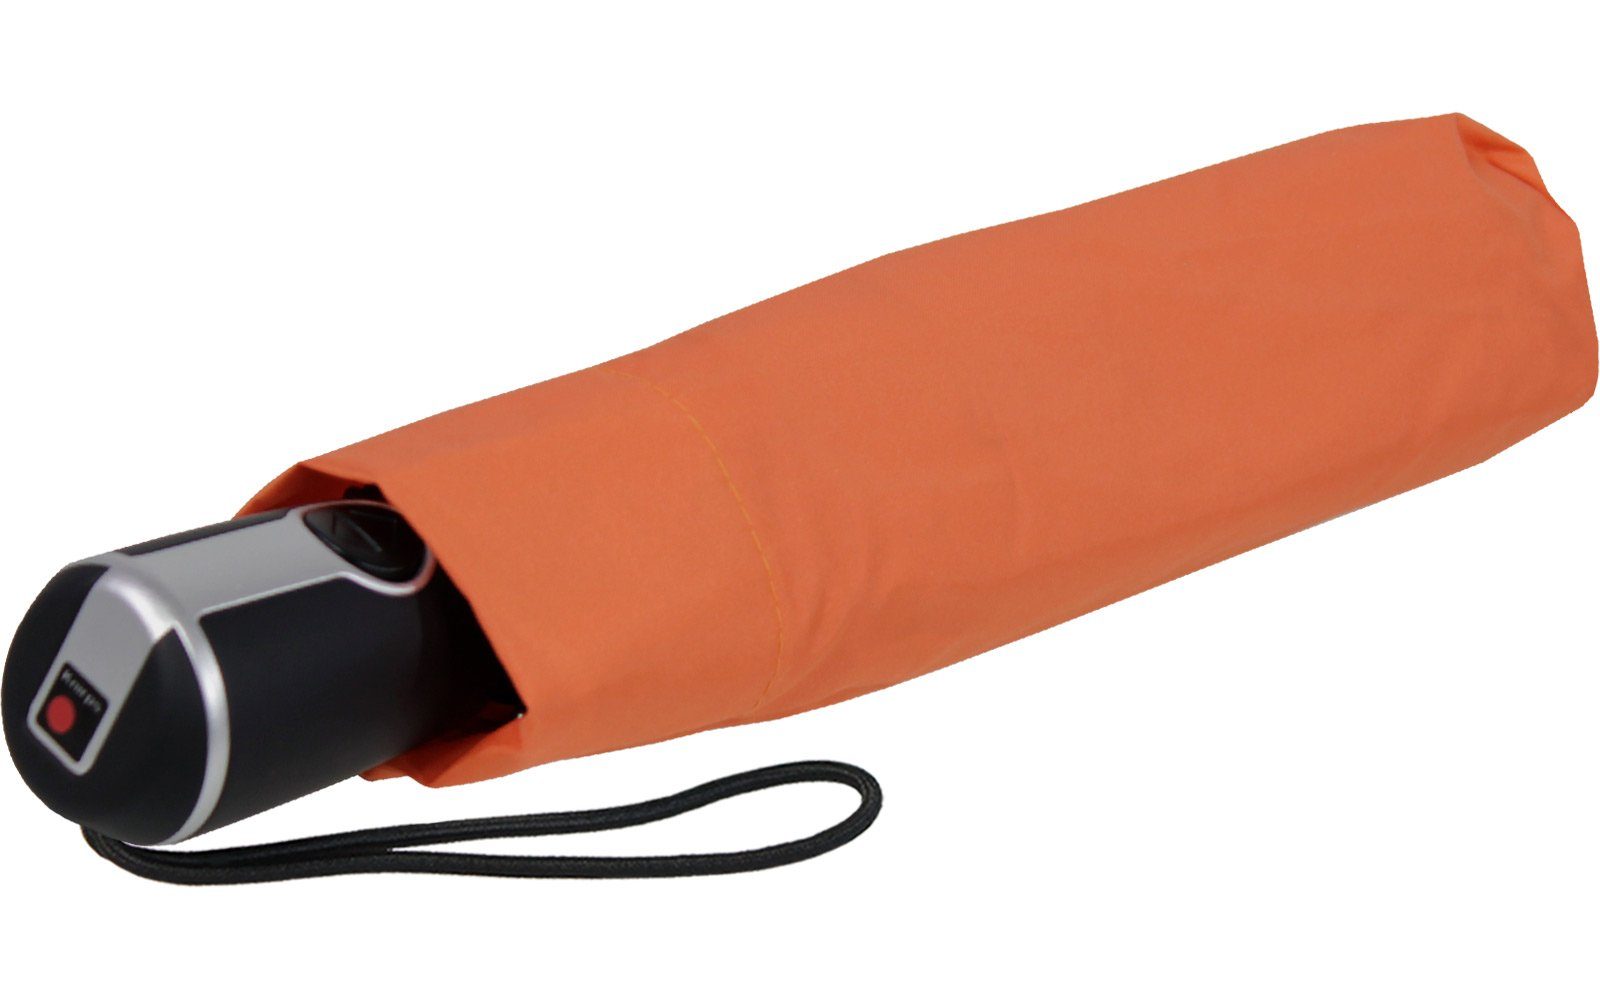 Auf-Zu-Automatik, große, Taschenregenschirm stabile Begleiter Knirps® mit Duomatic Large der orange